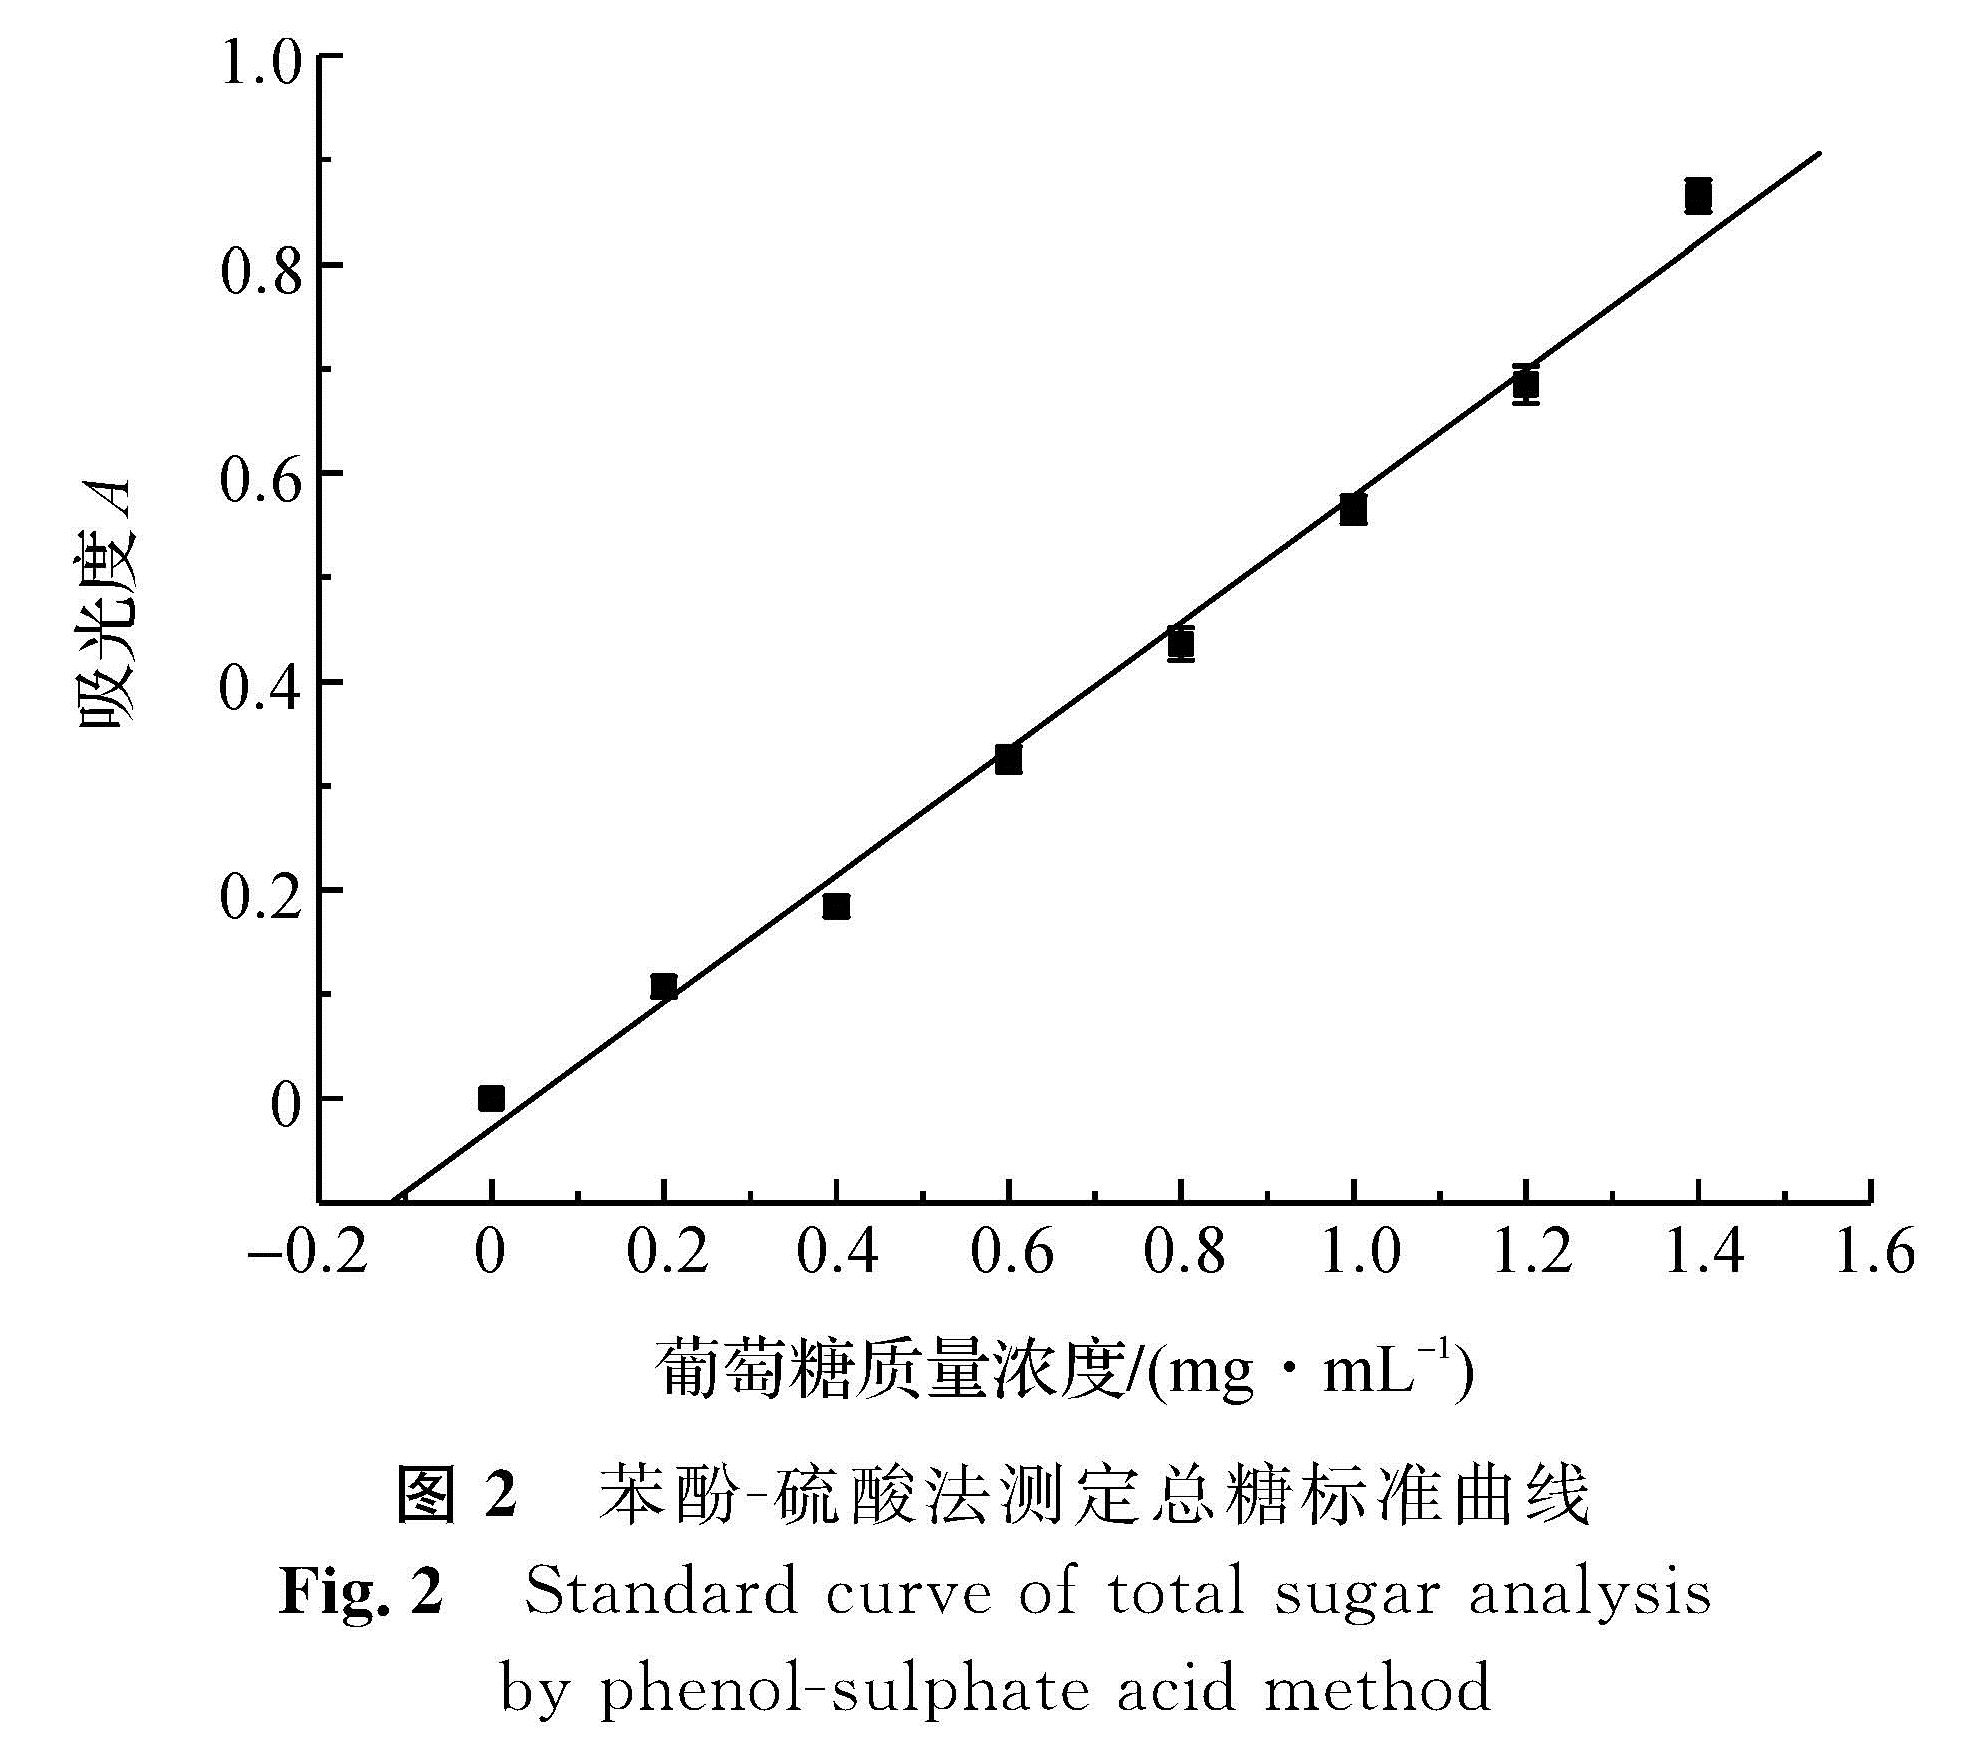 图2 苯酚-硫酸法测定总糖标准曲线<br/>Fig.2 Standard curve of total sugar analysis by phenol-sulphate acid method